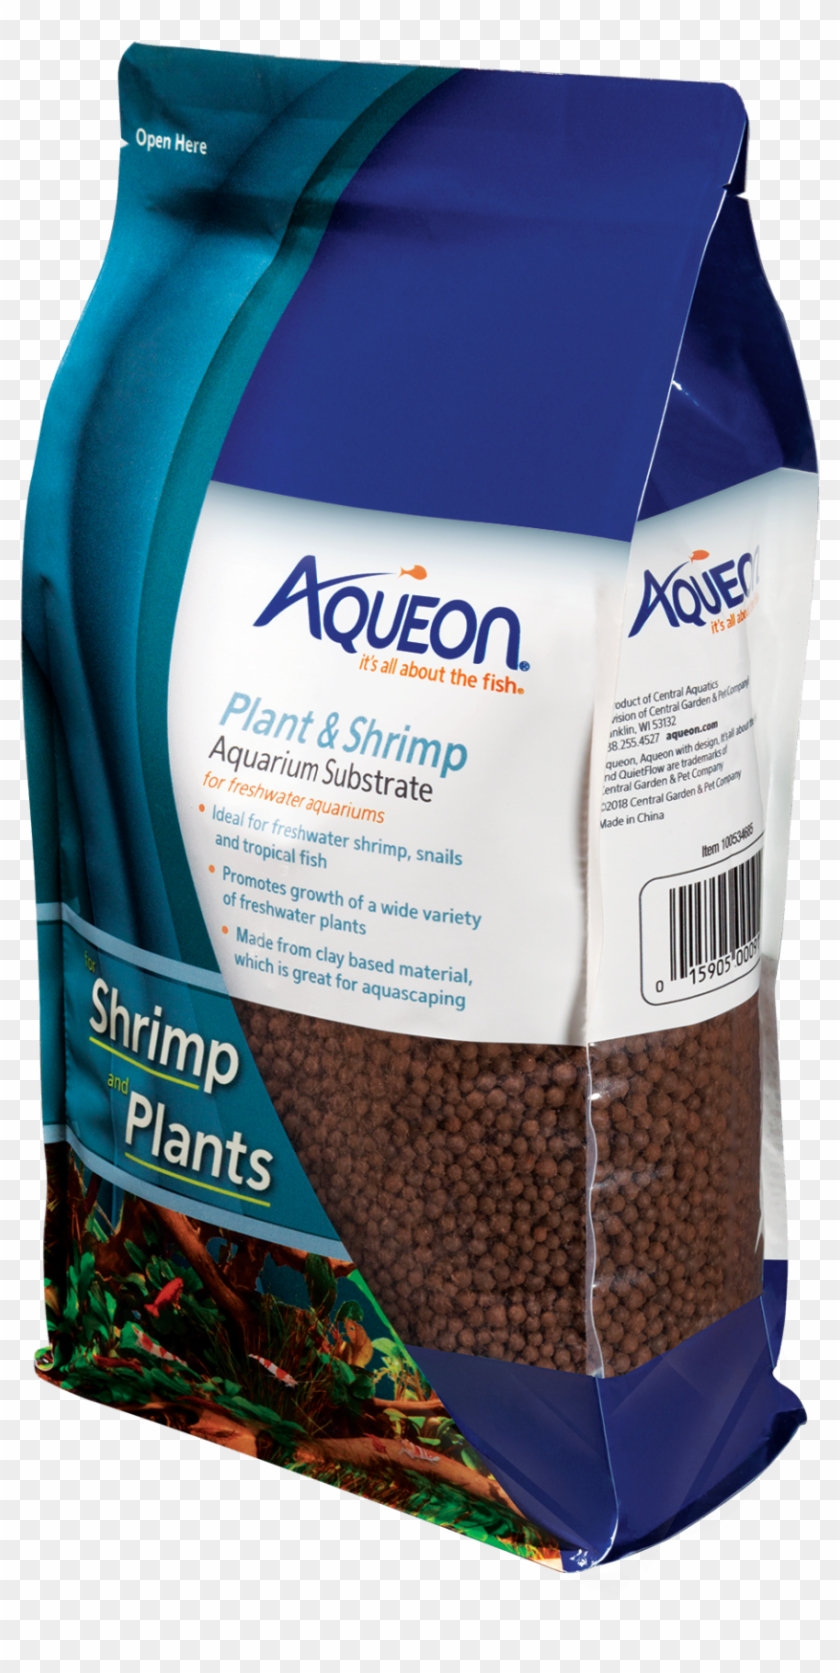 Aqueon Plant & Shrimp Aquarium Substrate Clipart #1196533